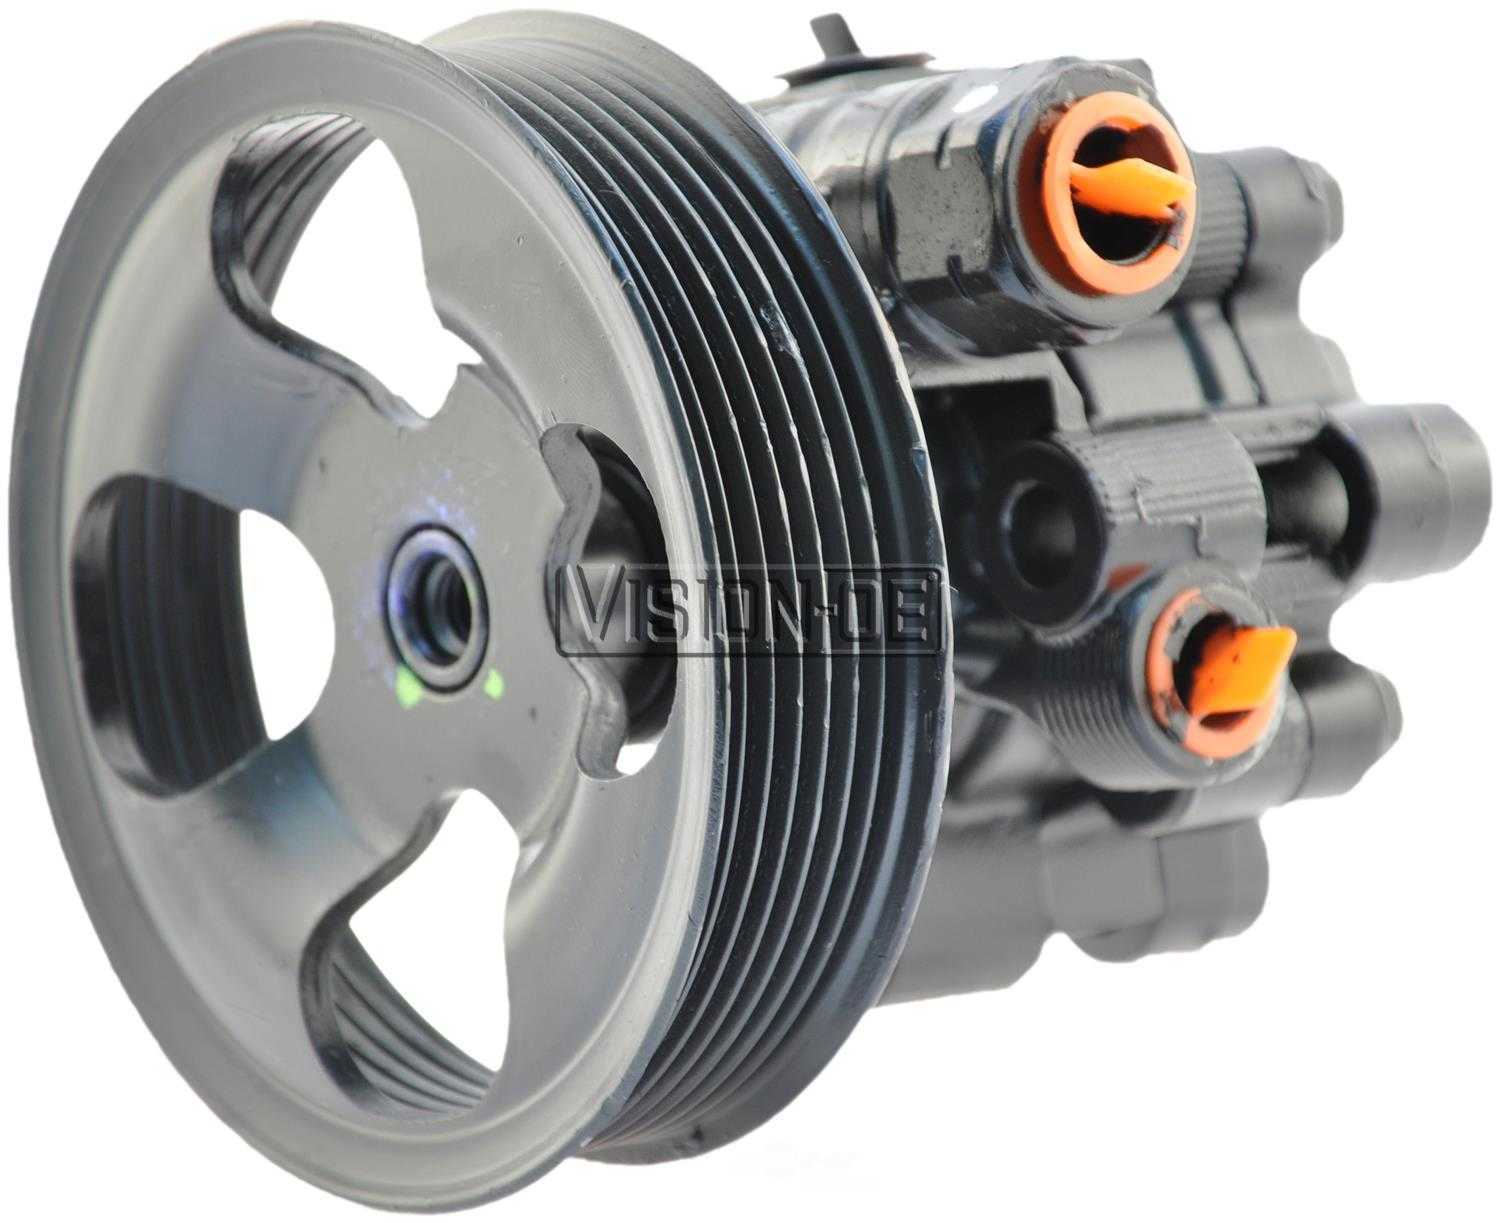 VISION-OE - Reman Power Steering Pump - VOE 990-1073